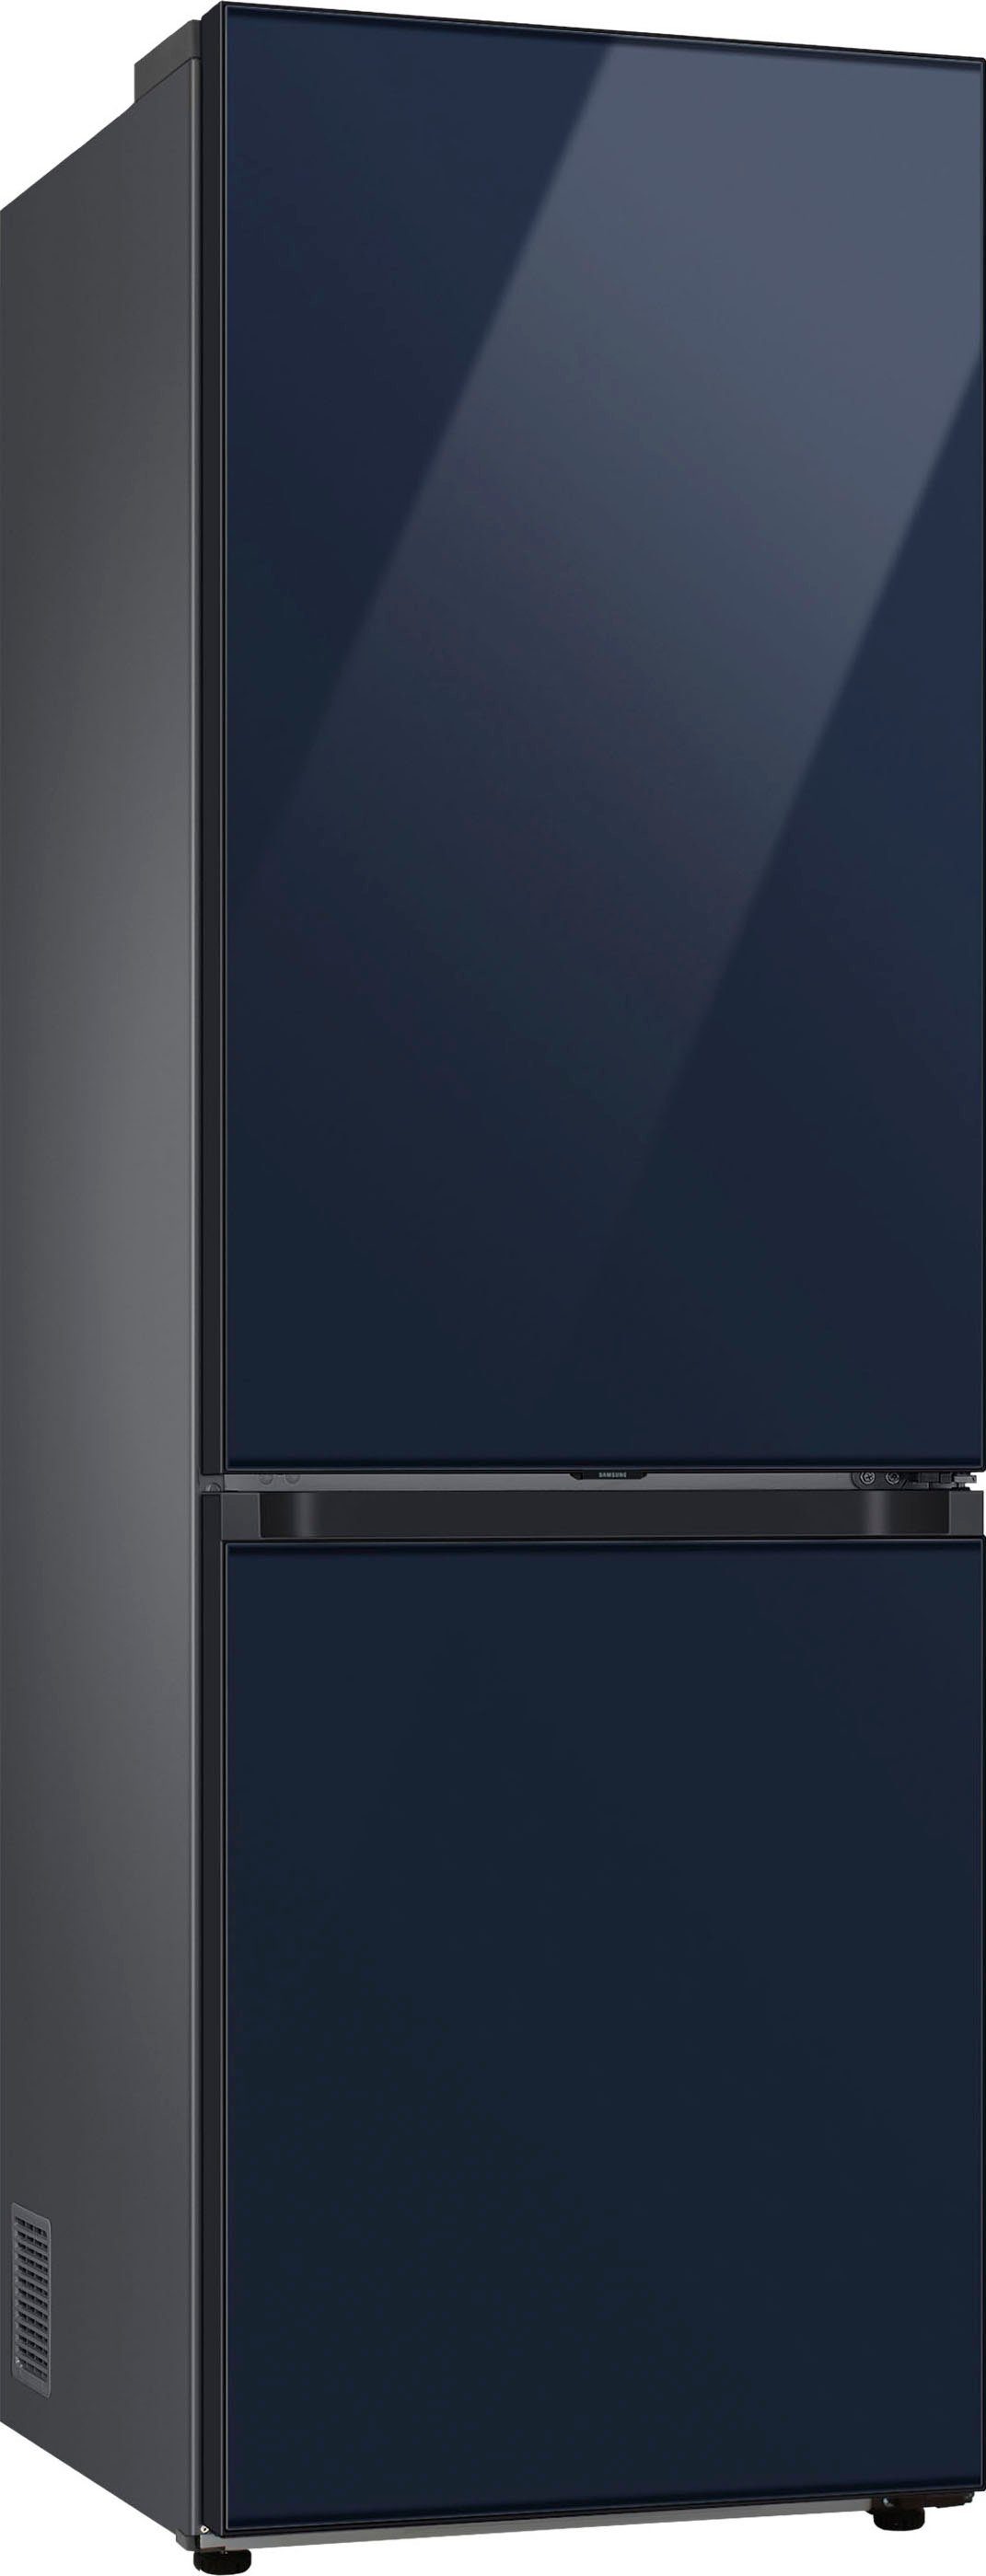 Samsung Kühl-/Gefrierkombination Bespoke 185,3 cm RL34C6B2C41, 59,5 cm breit hoch